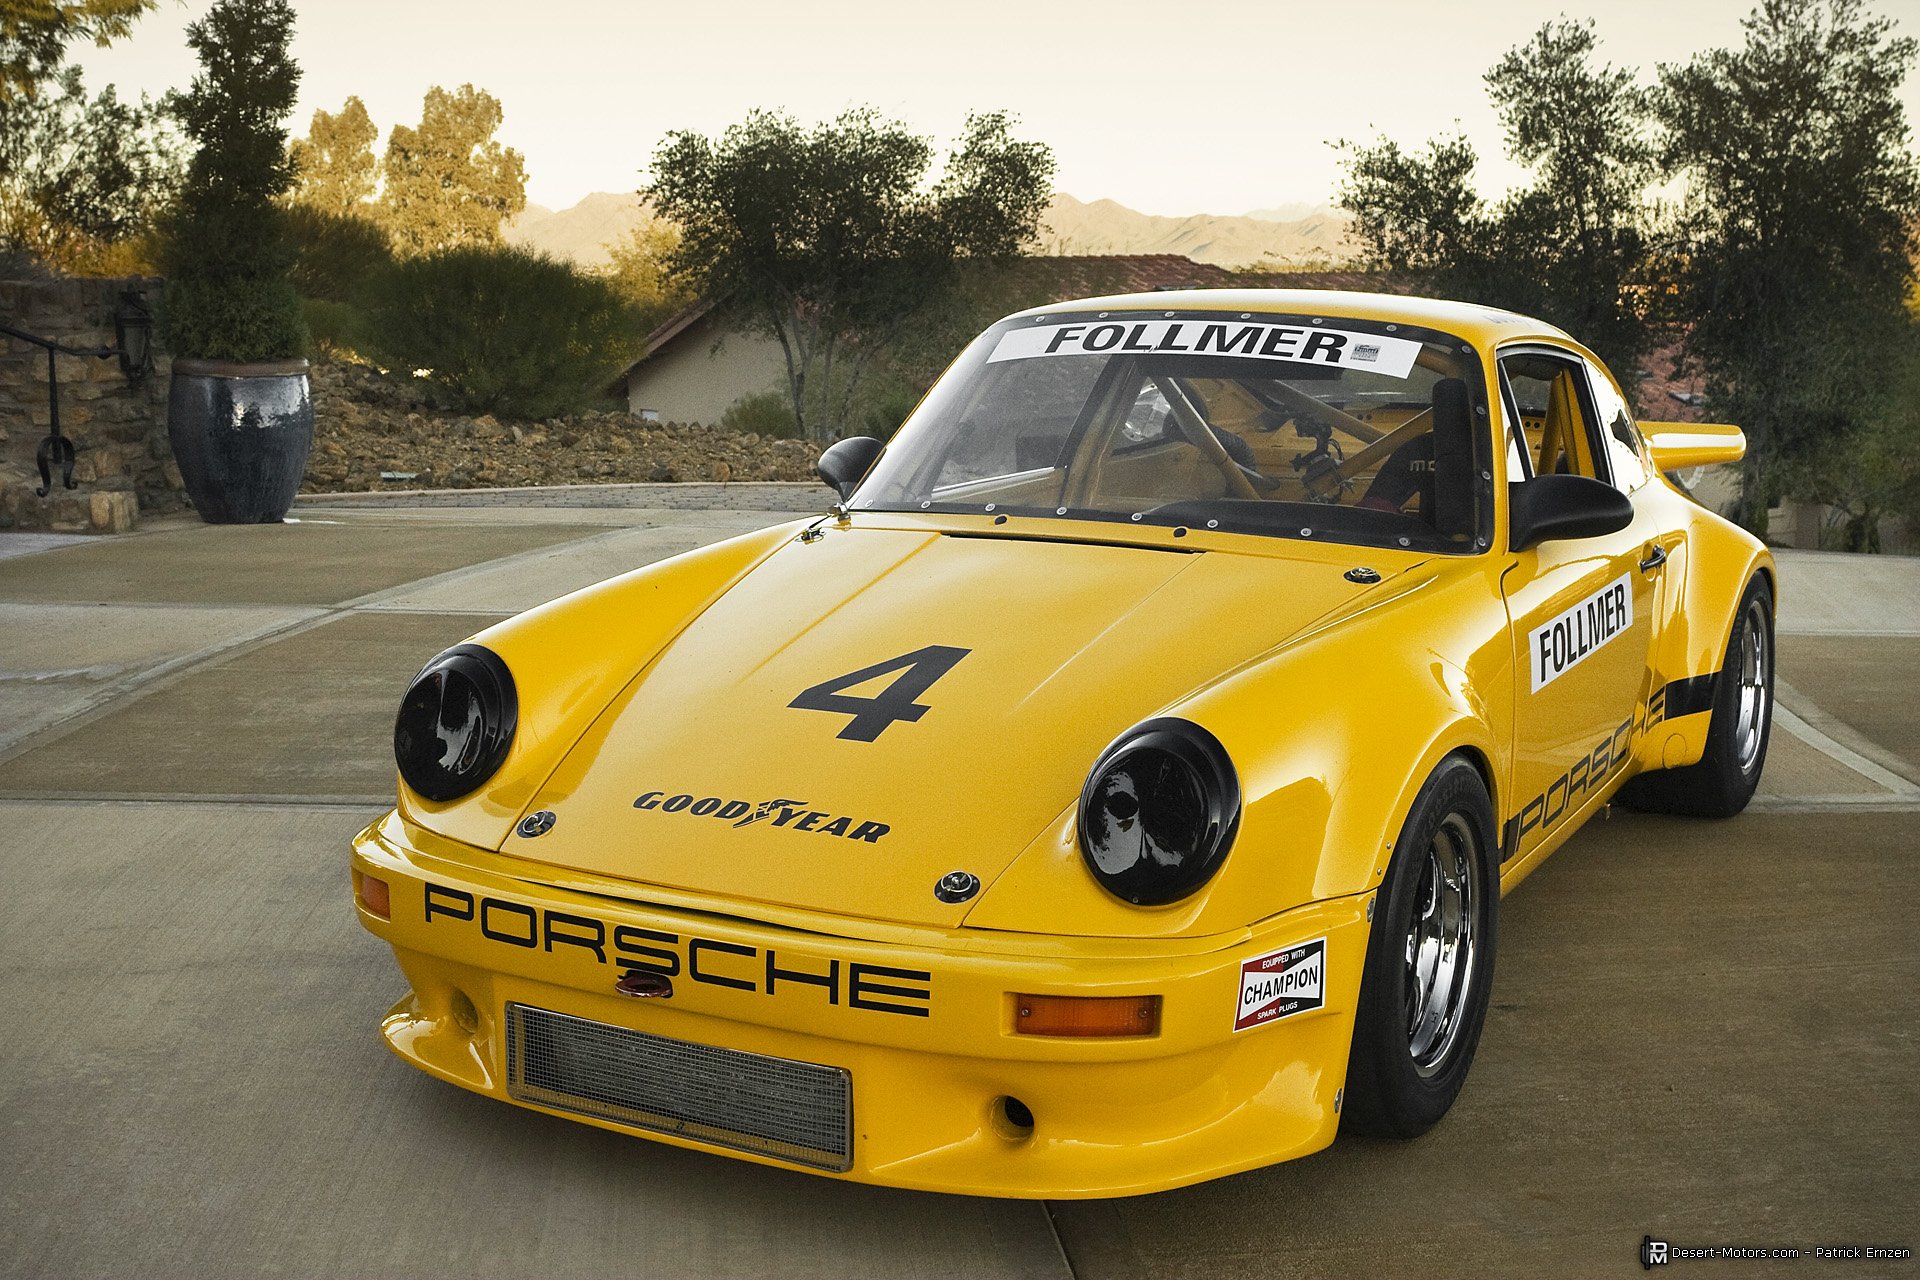 1973, Porsche, 911, Rsr, Iroc, Race, Racing, Supercar, Classic Wallpaper